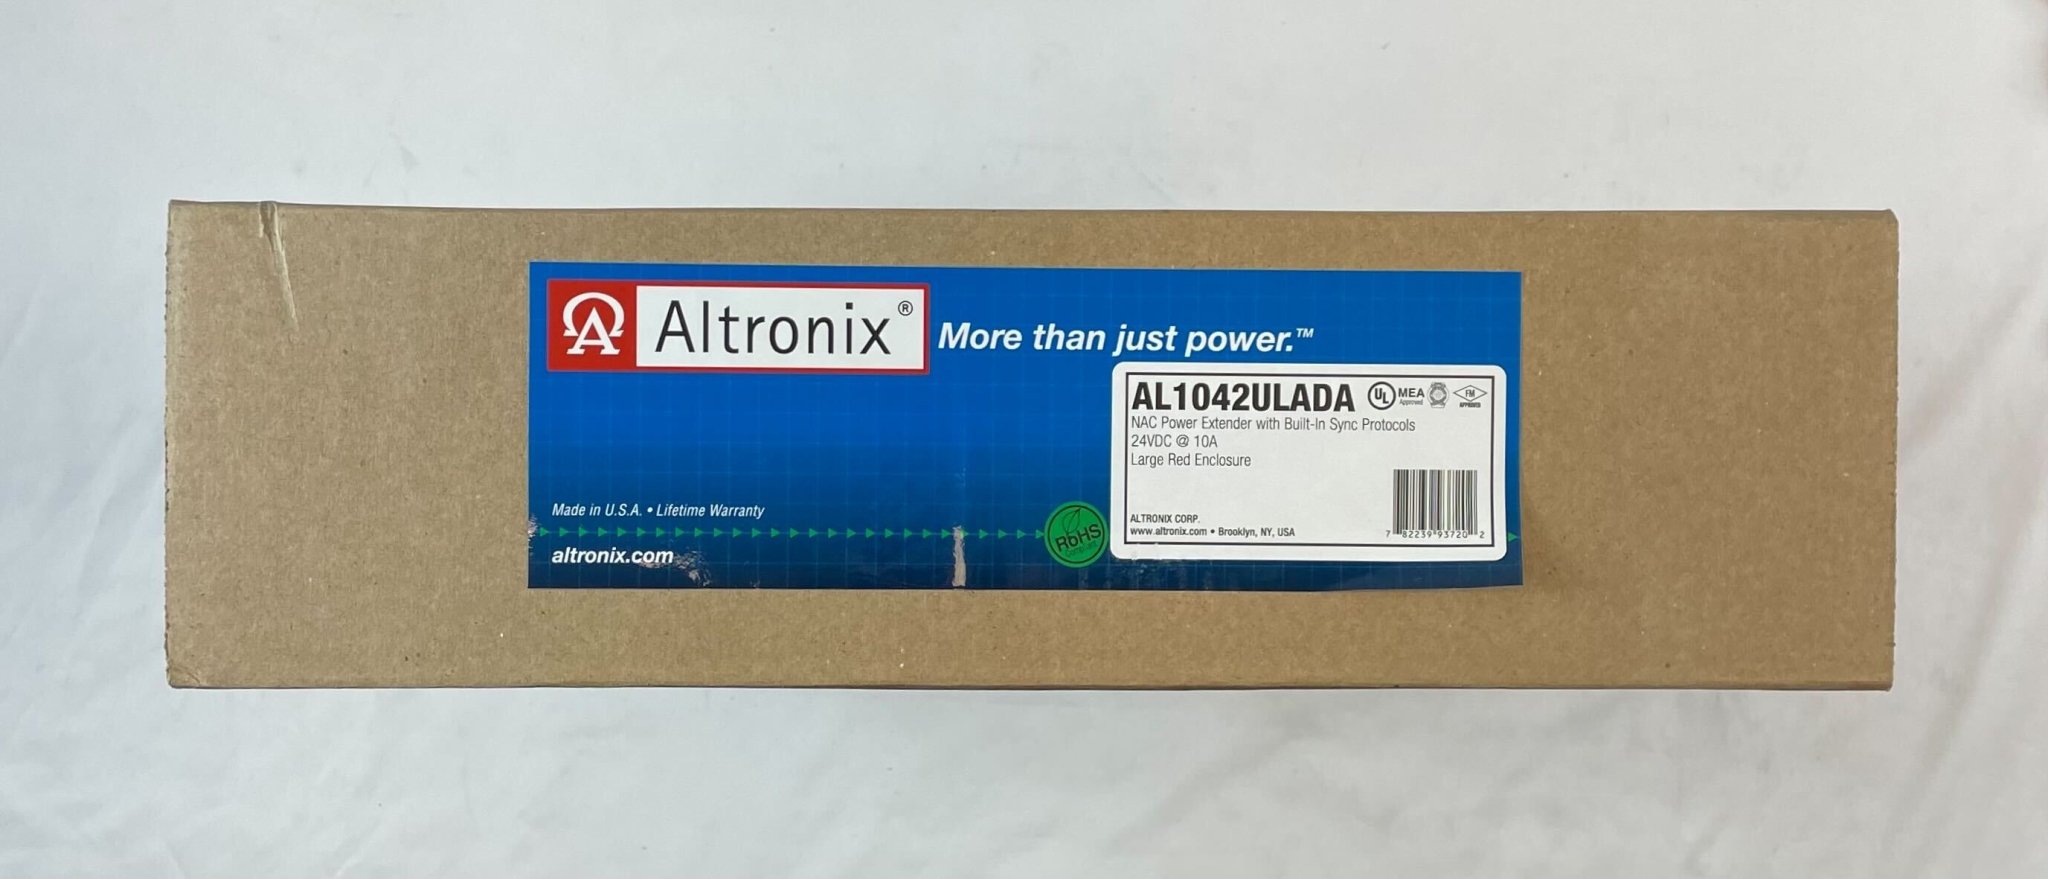 Altronix AL1042ULADA